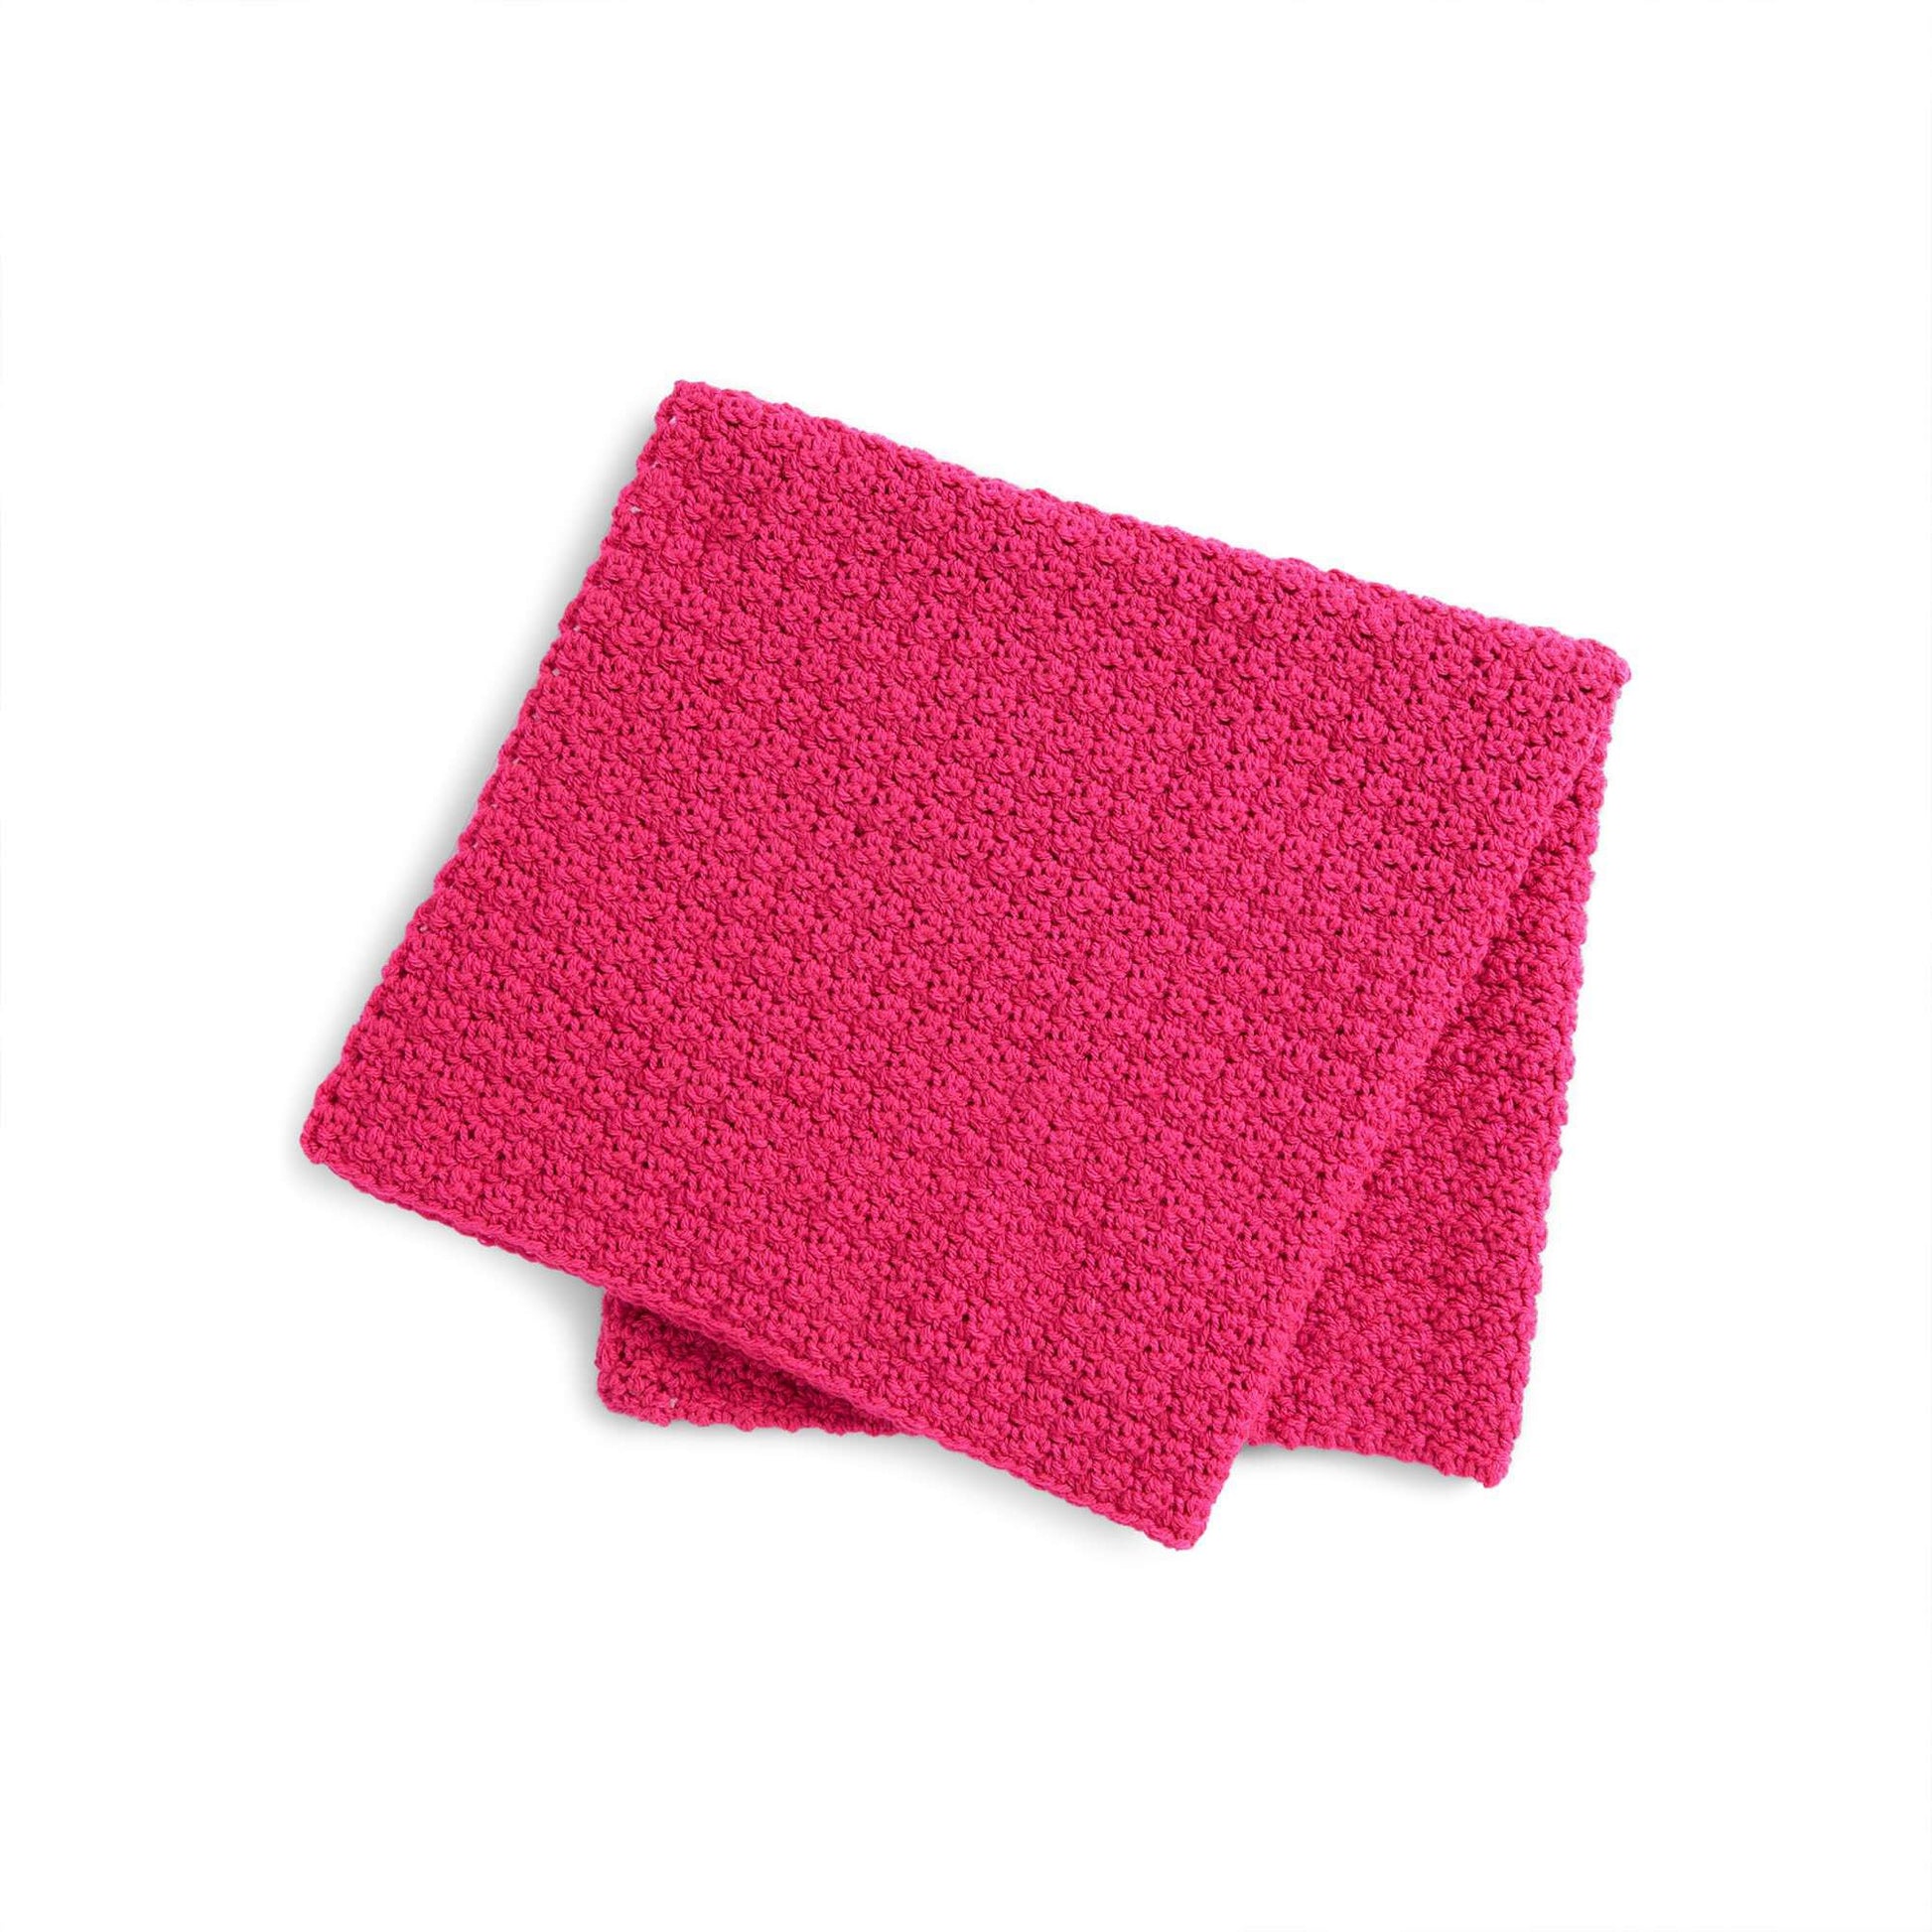 Free Red Heart Crochet Cuddles Pet Blanket Pattern